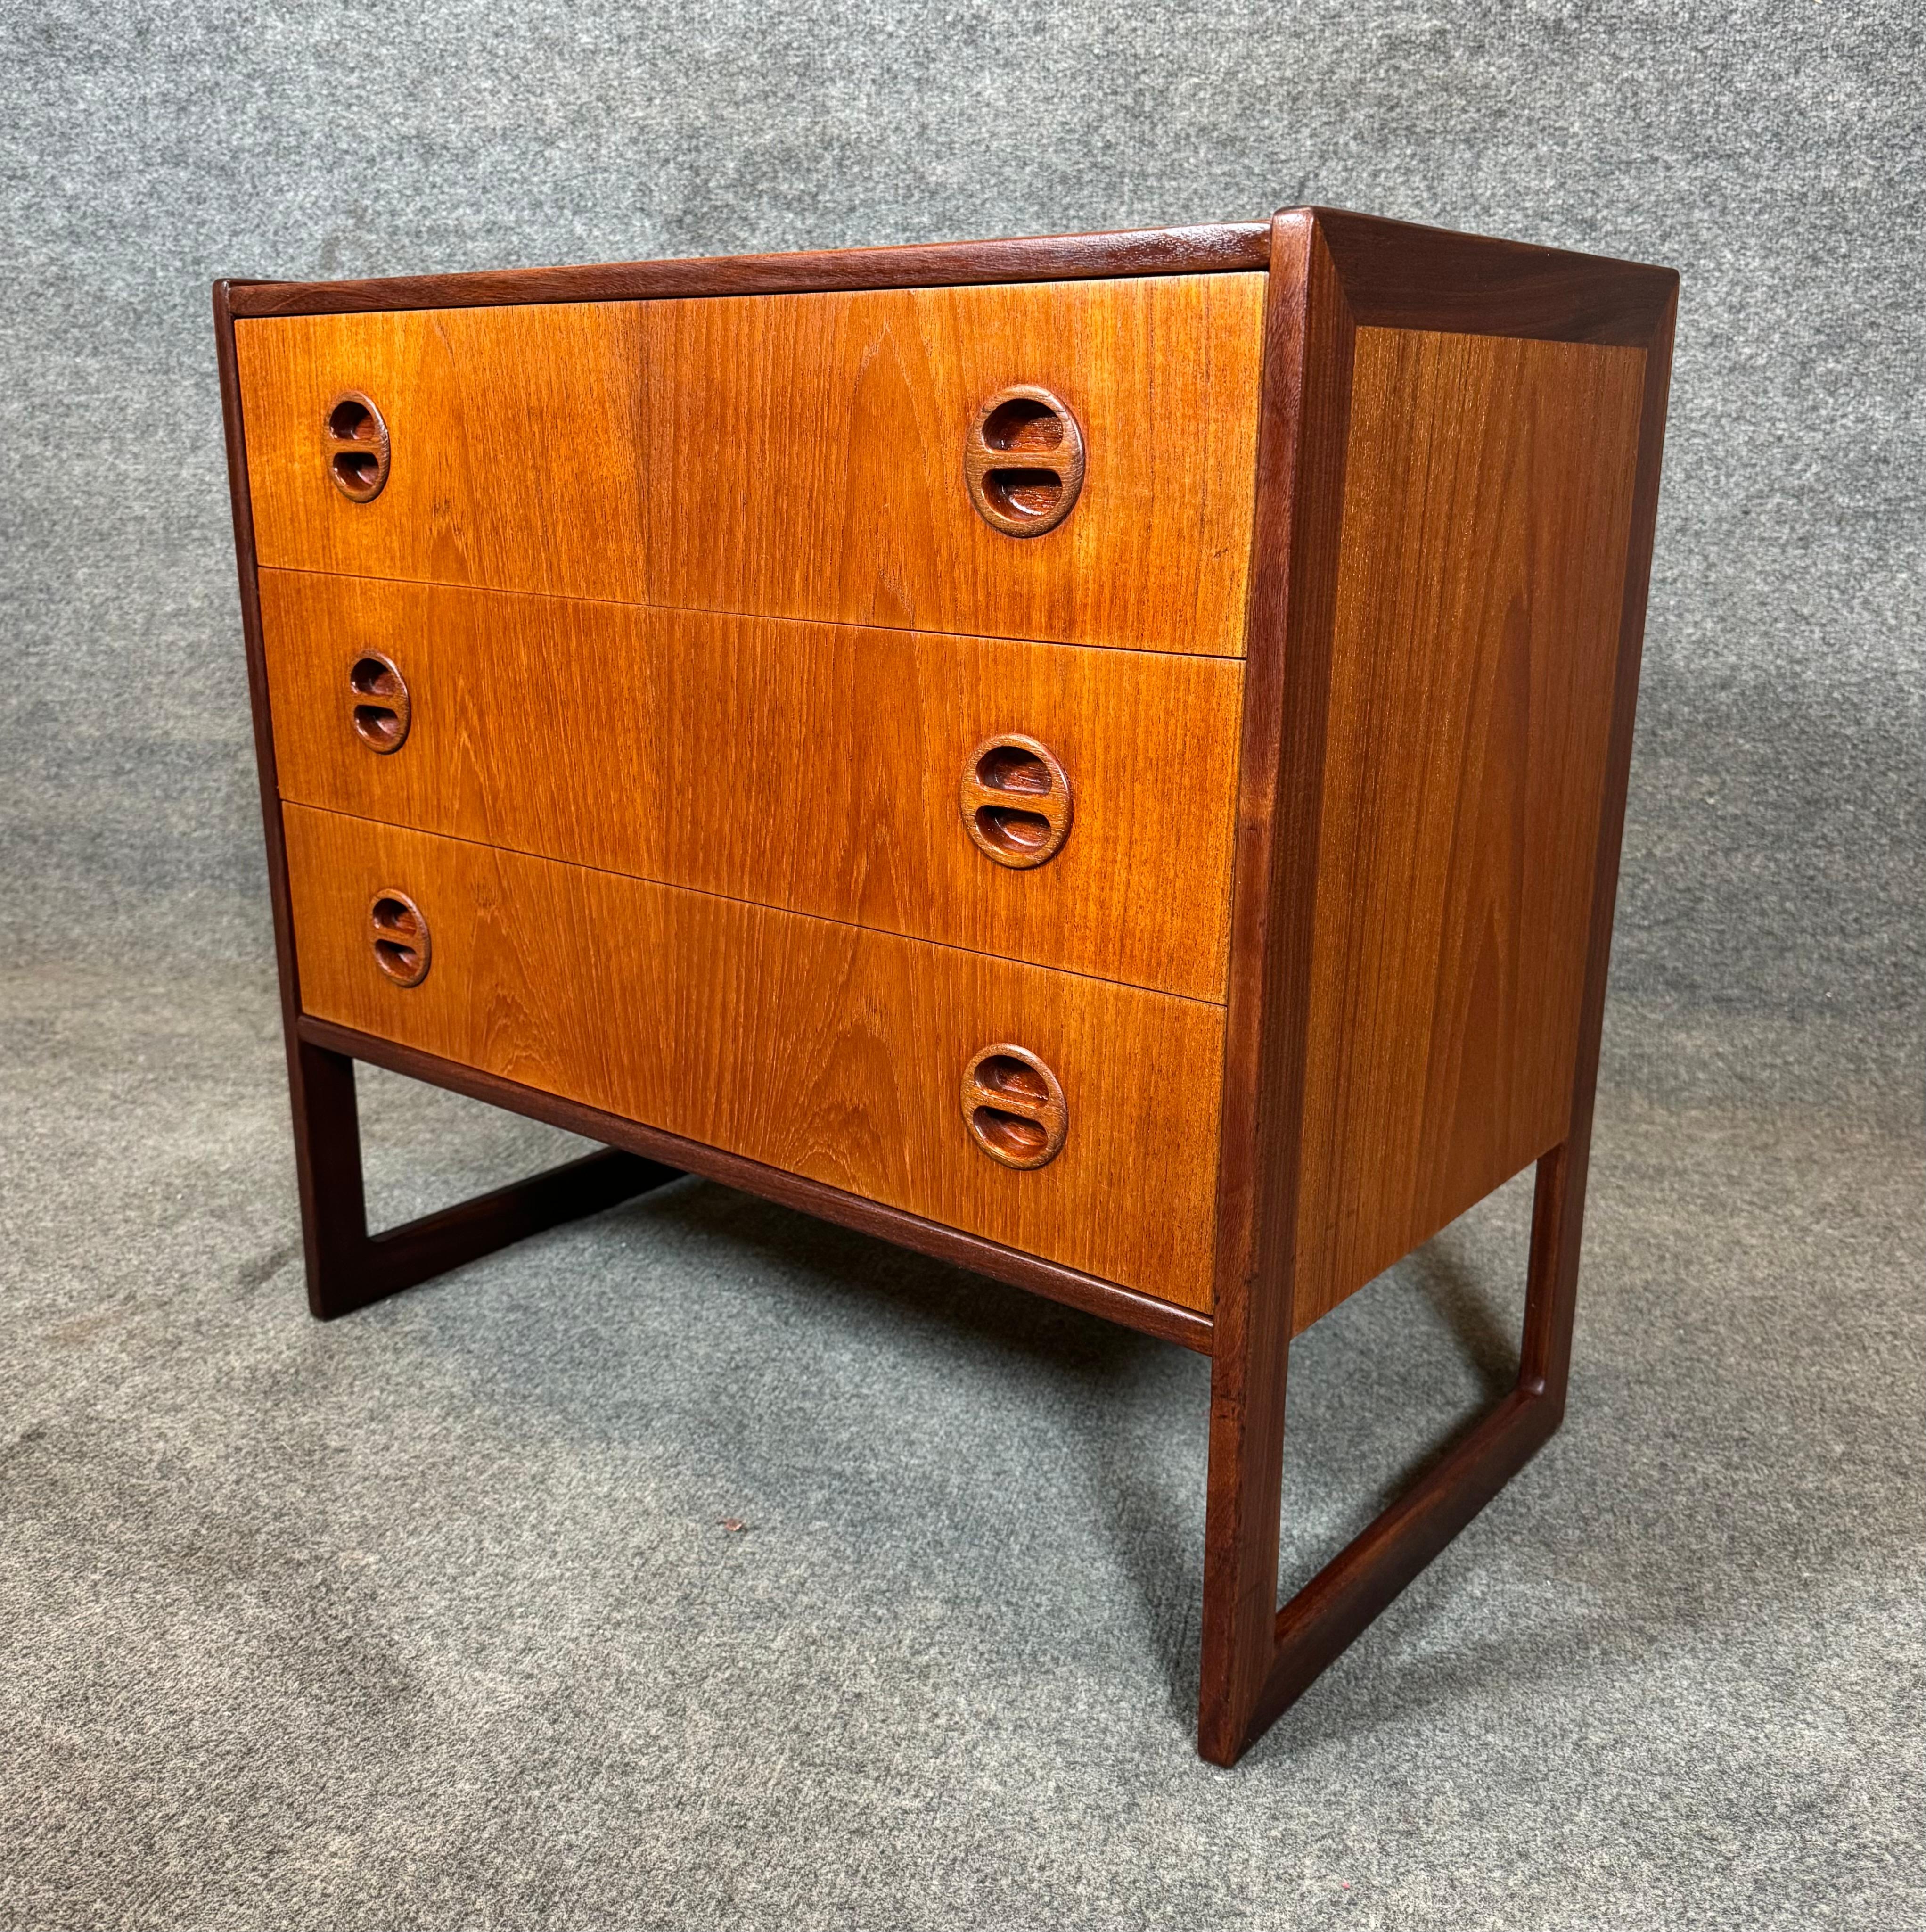 Mid-20th Century Vintage Danish Mid Century Modern Teak LowBoy Dresser Chest by Arne Wahl Iversen